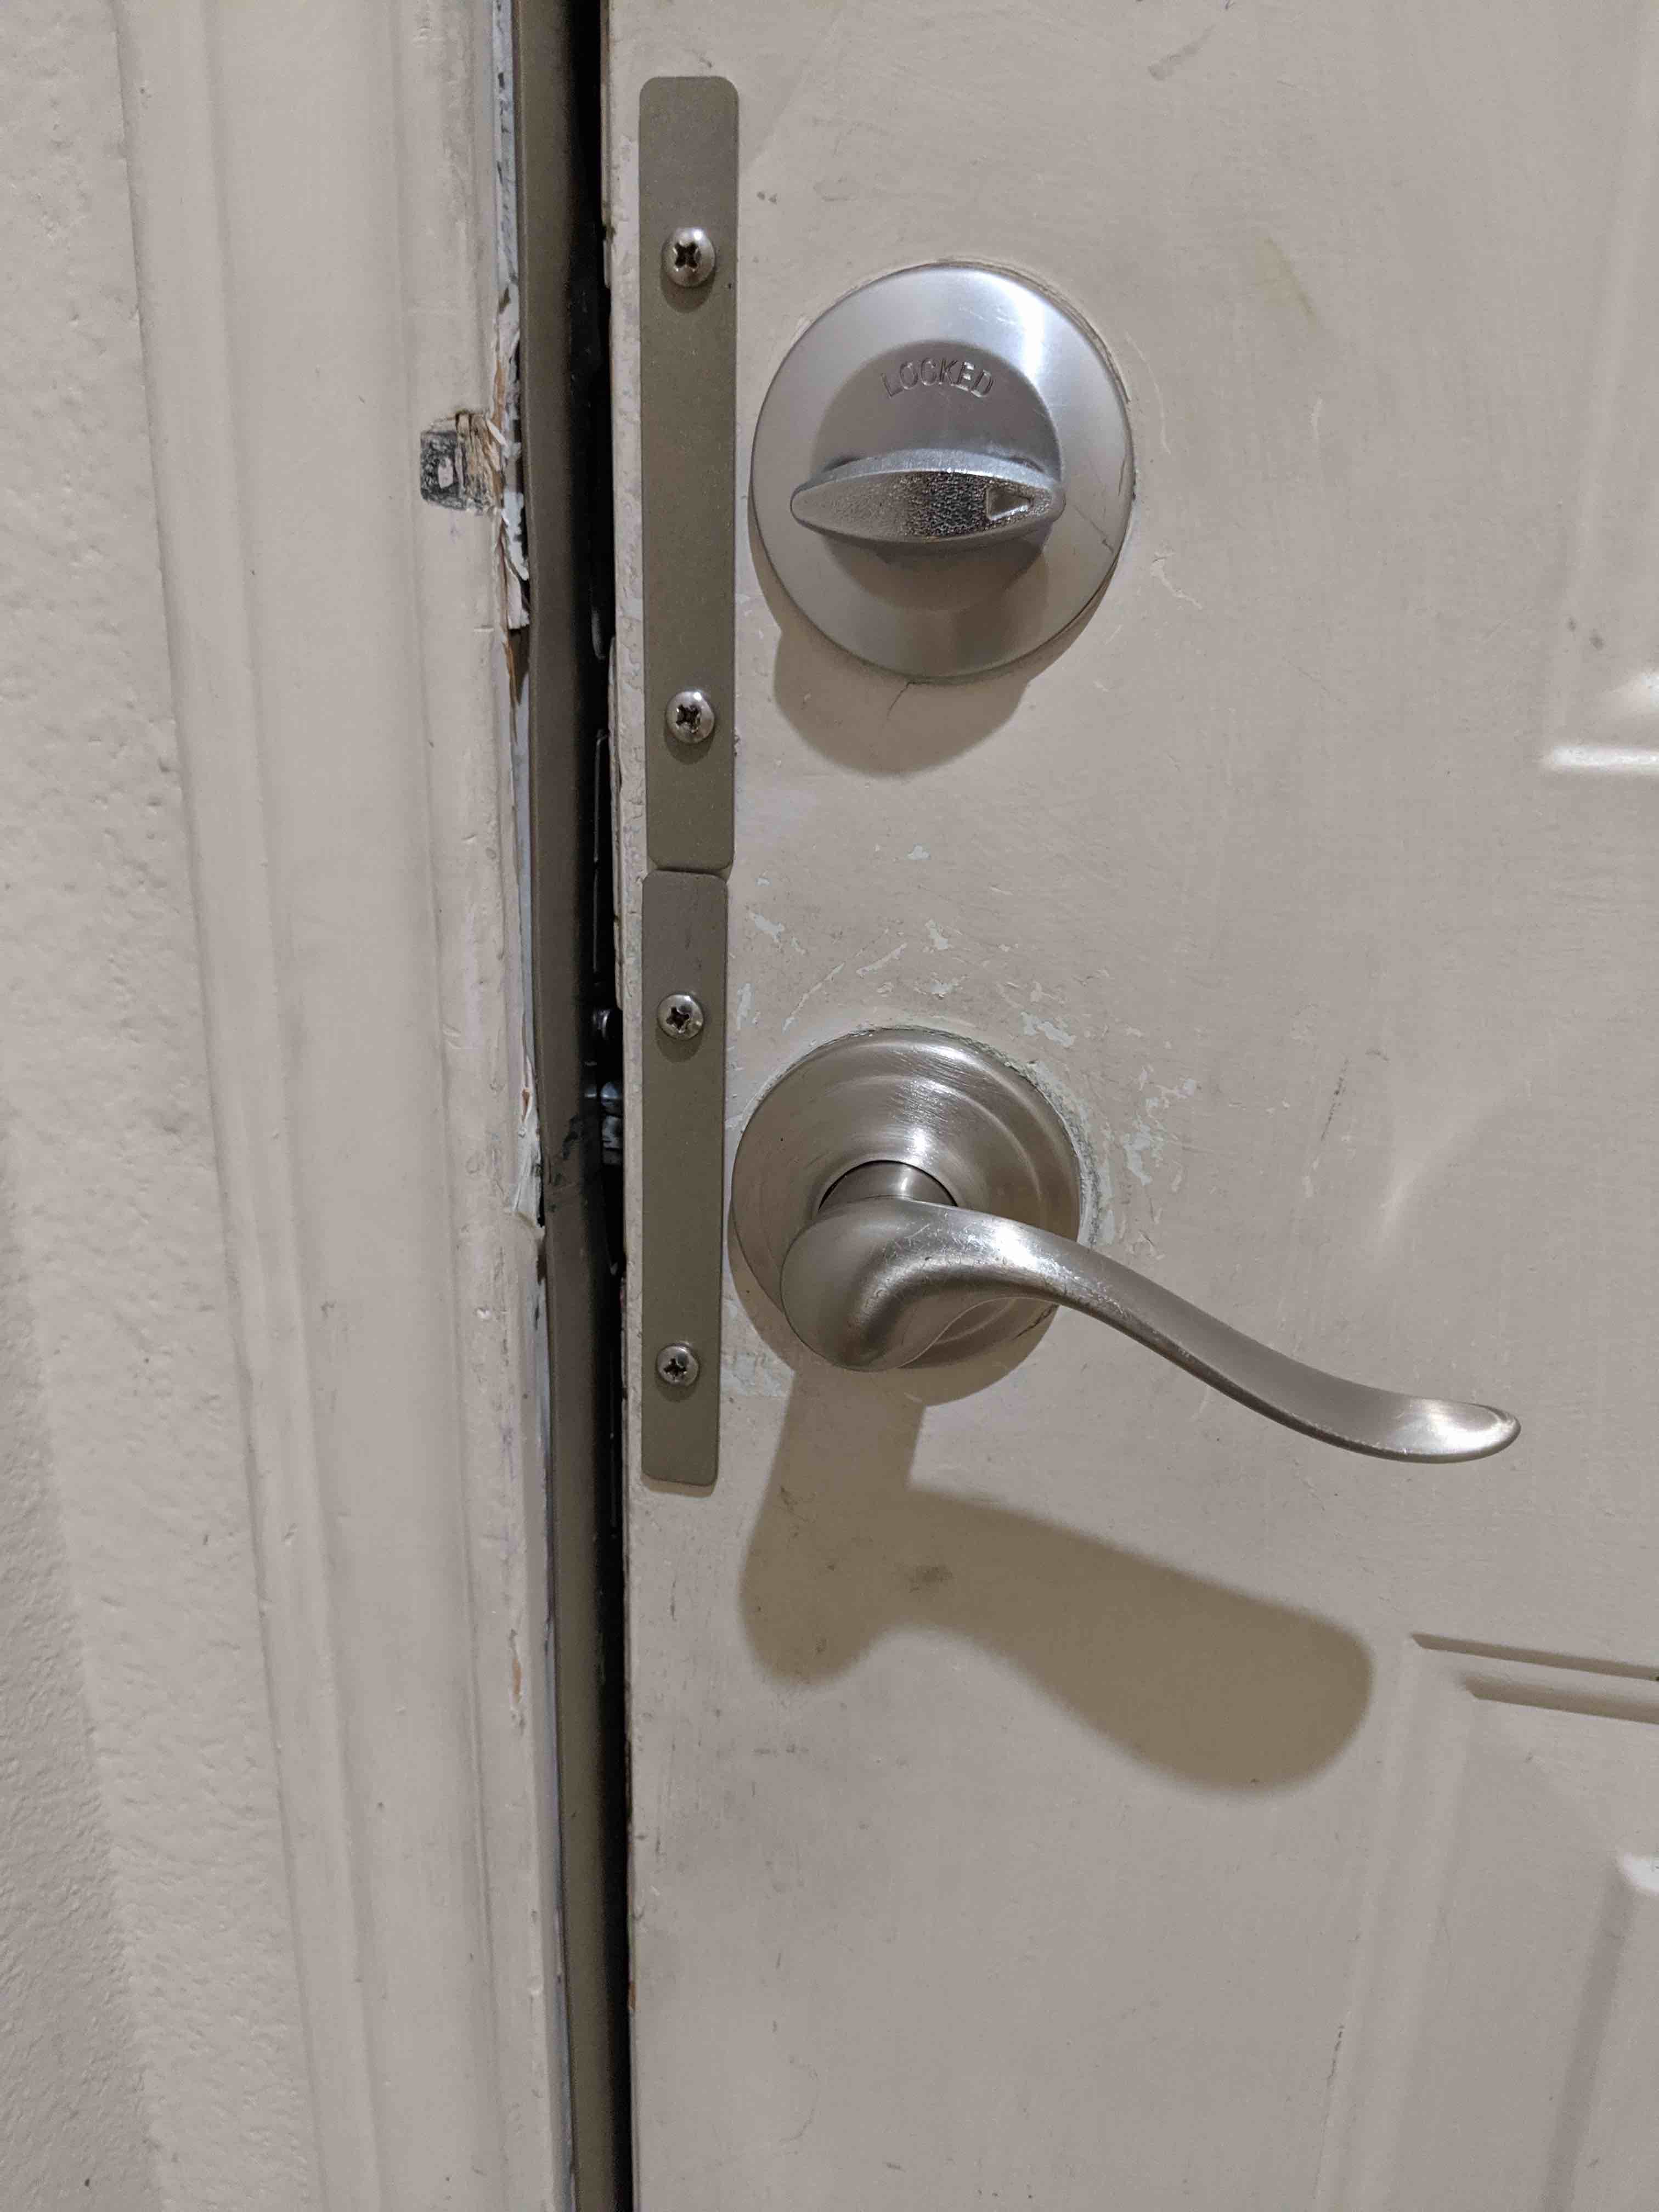 Door Armor PRO Door Shield Door Security Accessory